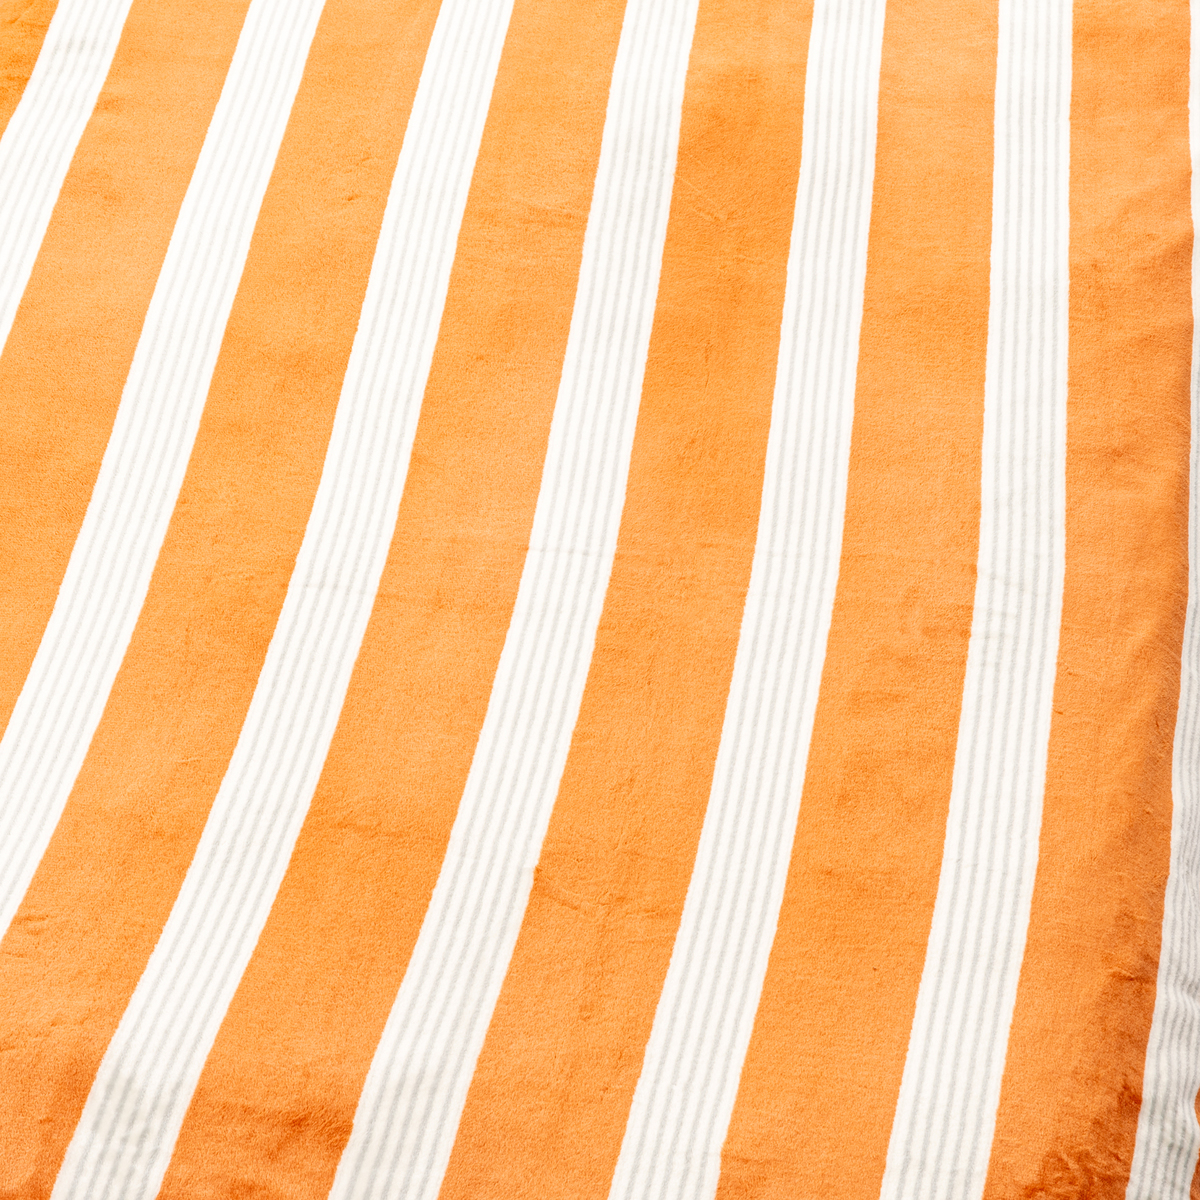  西川 ロングサイズ毛布  オレンジ/ストライプ